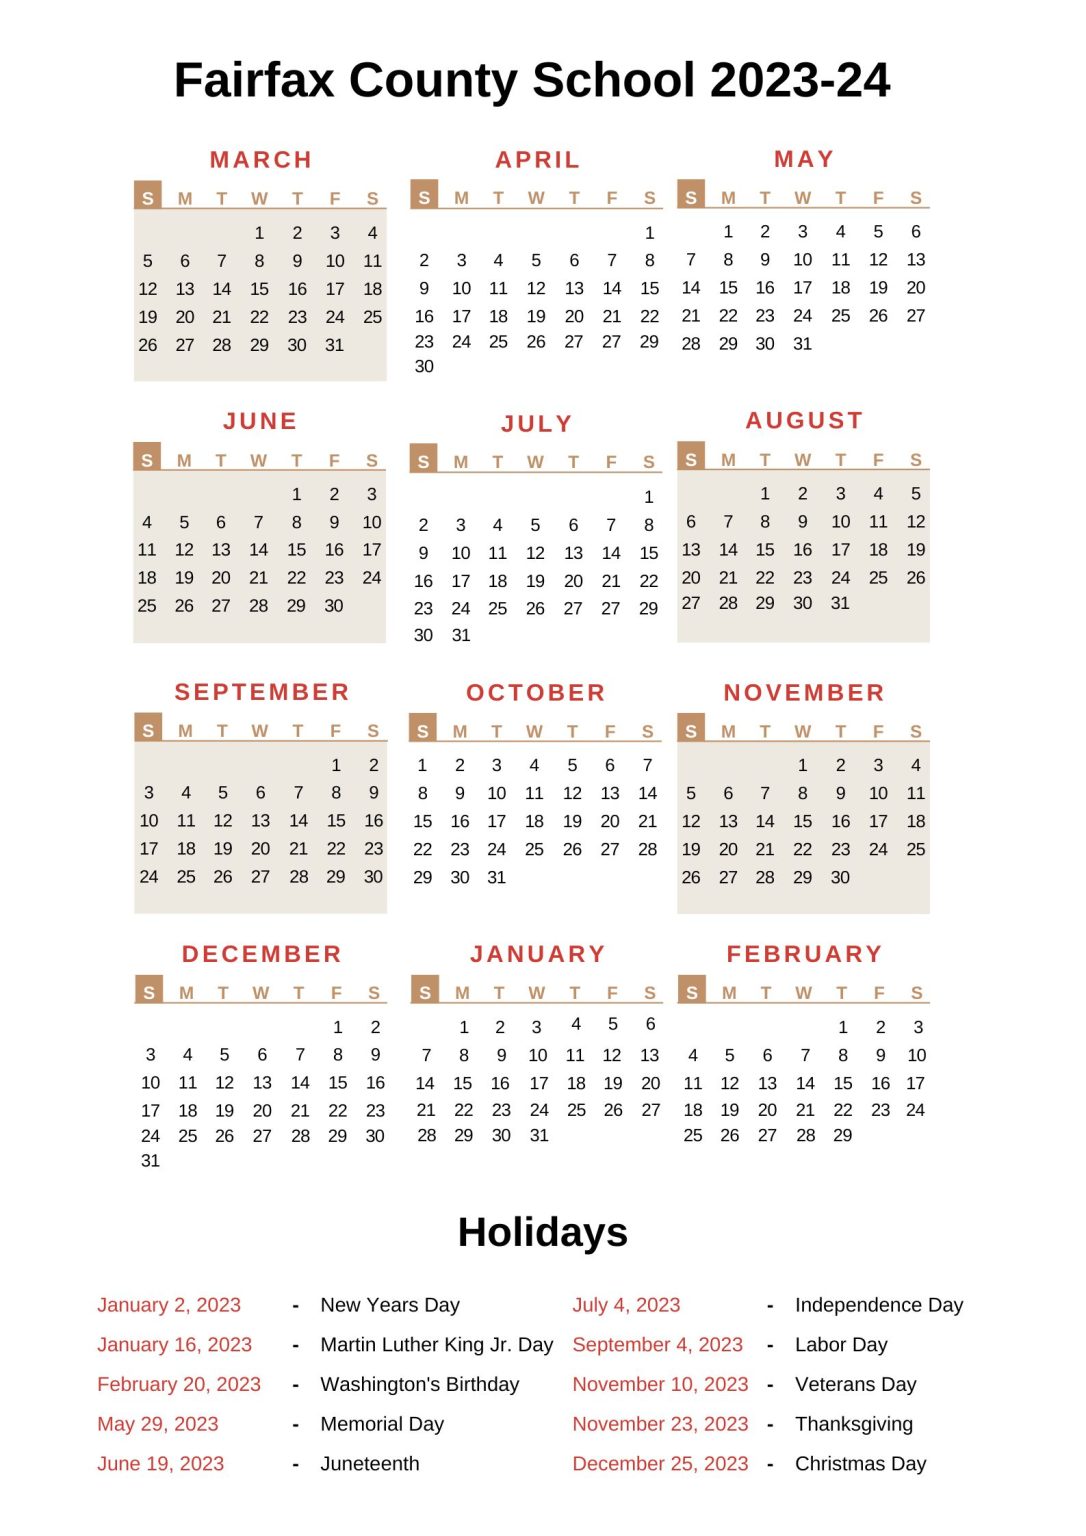 fairfax-county-school-calendar-with-holidays-2022-2023